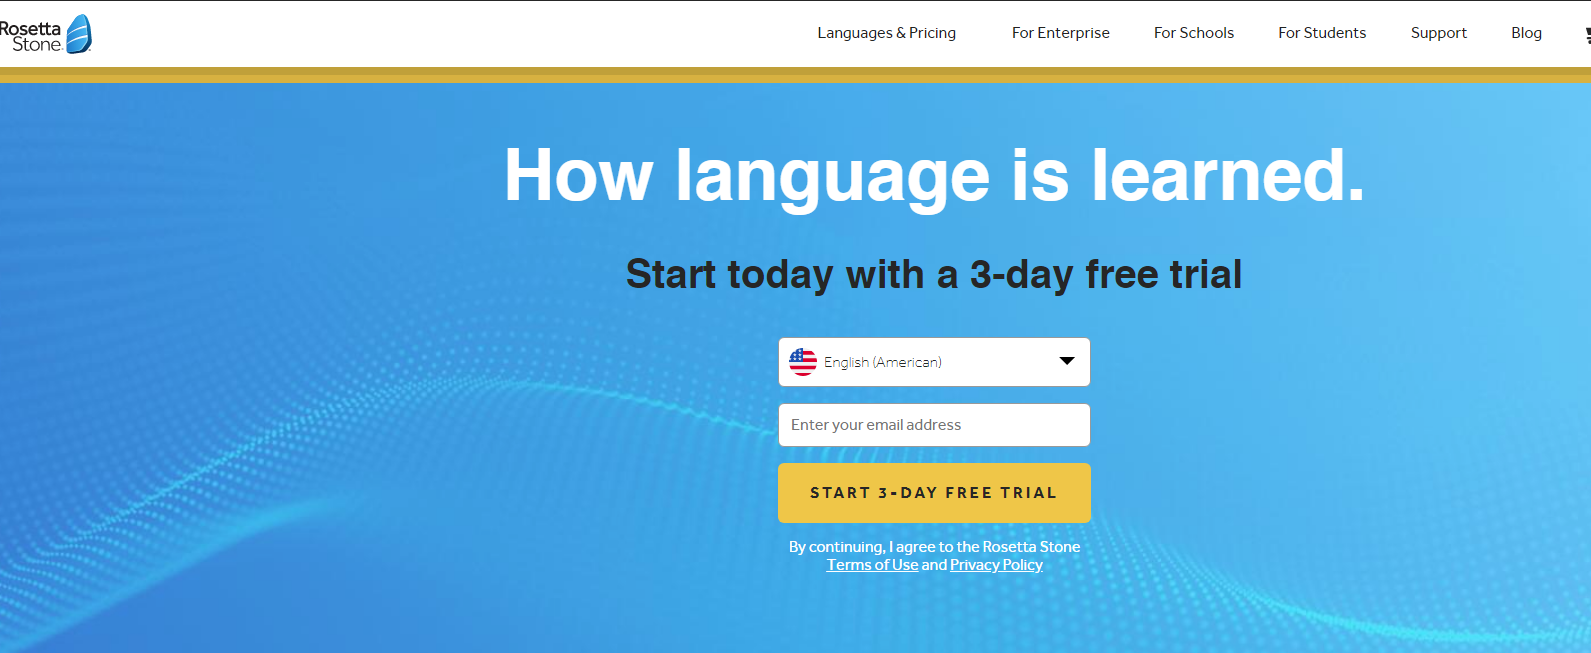 15个国外在线英语学习网站及app推荐 学习英语口语 听力 阅读 写作 考试准备等 付费 免费都有 Extrabux